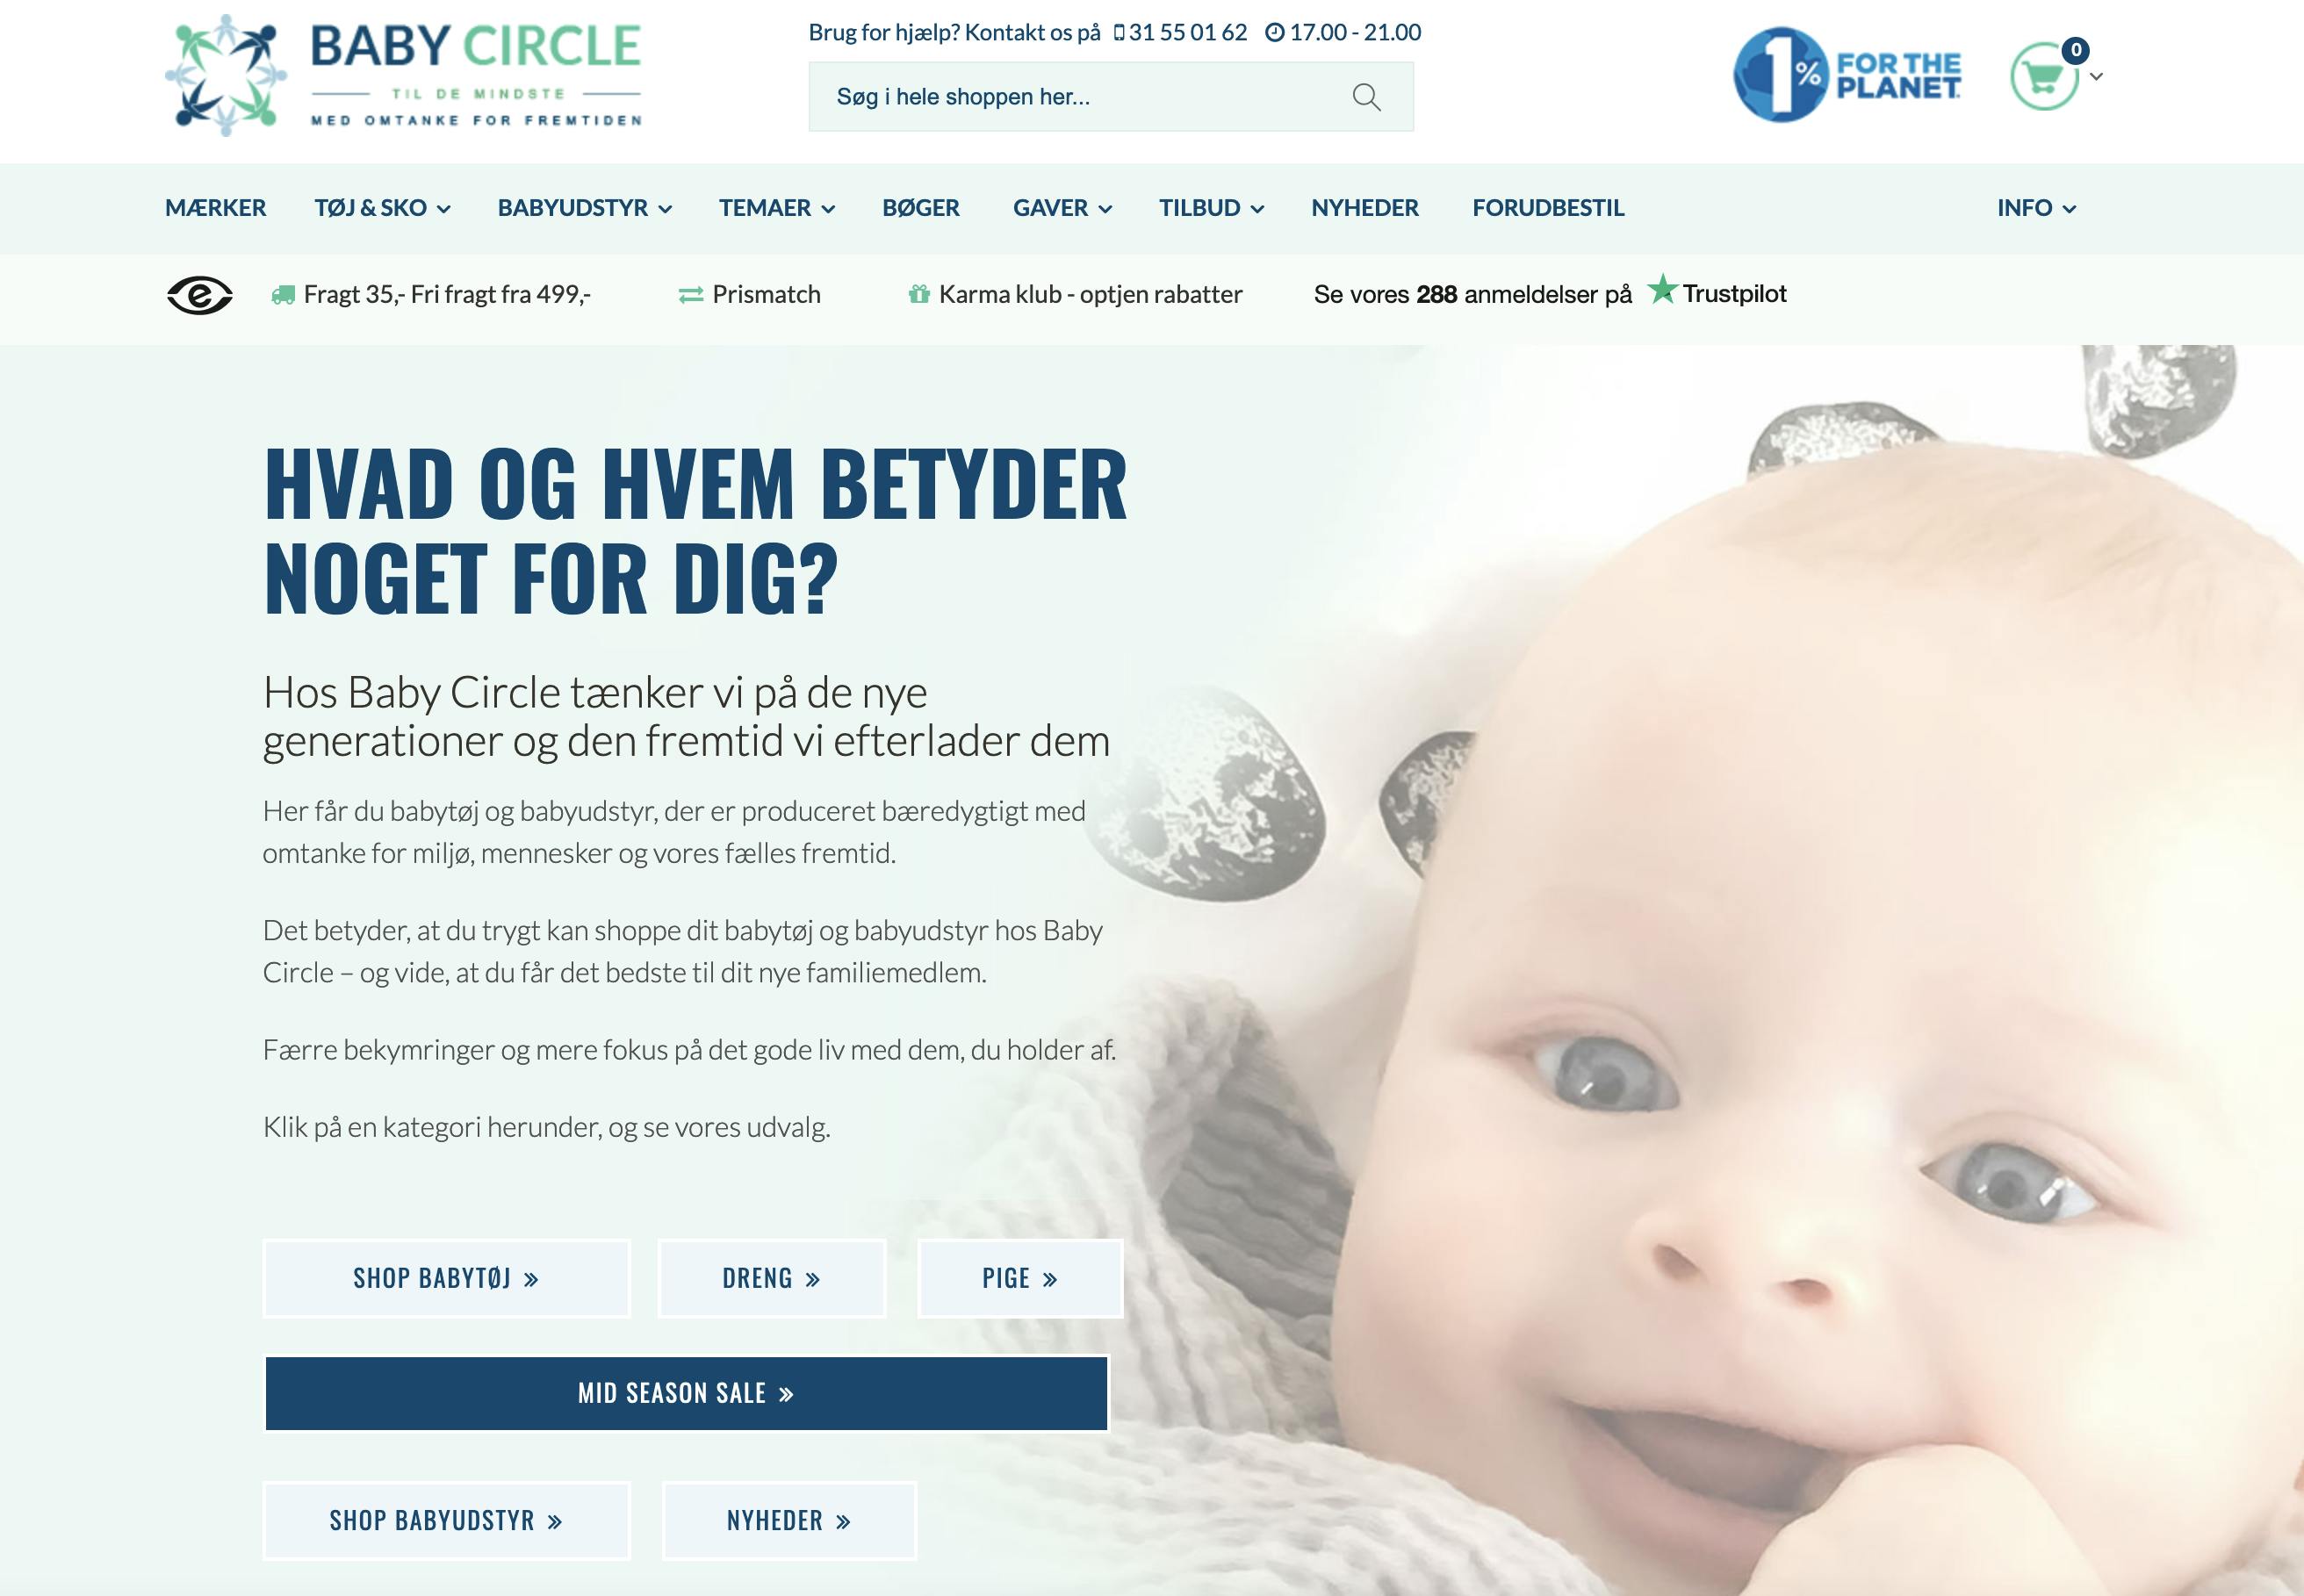 blande Anden klasse Sport Babycircle.dk - Webshop til baby og småbørn med bæredygtigt fokus